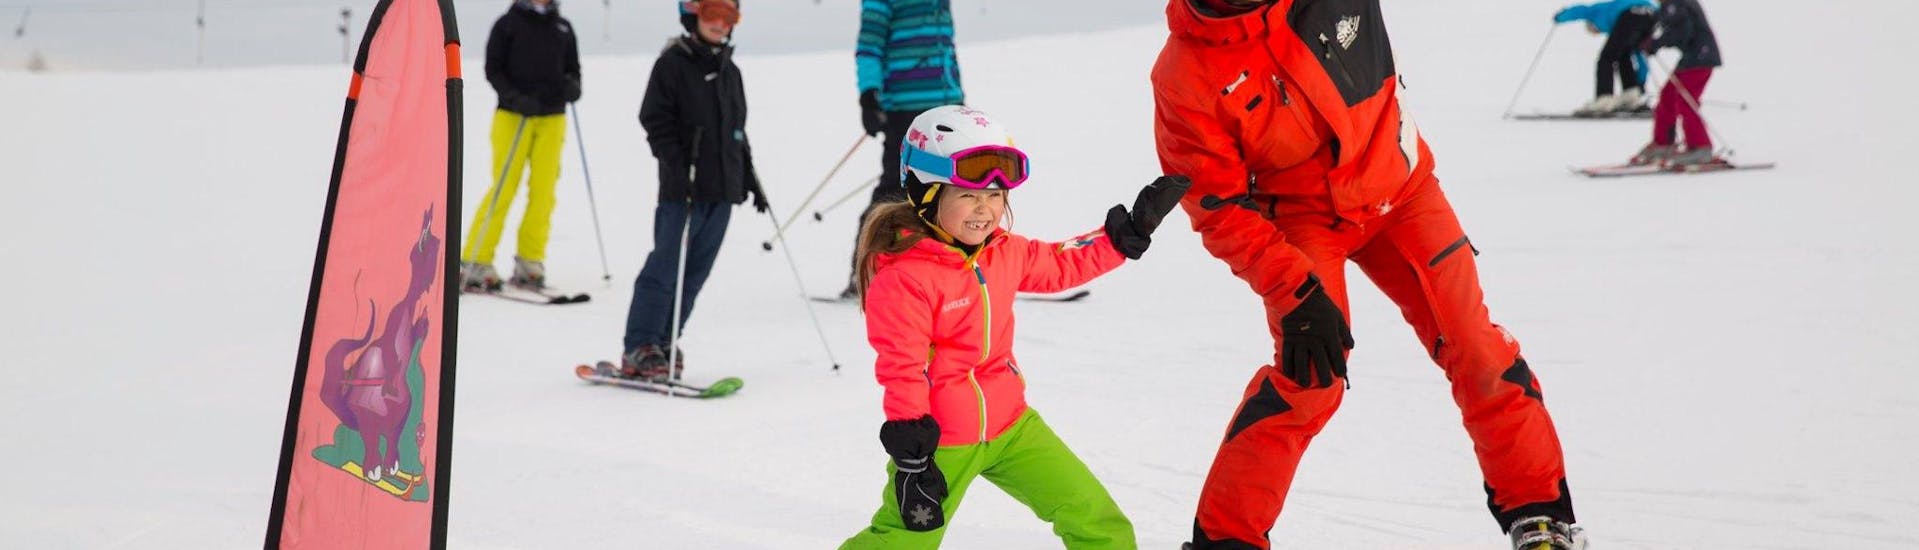 Clases de esquí para niños a partir de 4 años para debutantes con Skischule Zahmer Kaiser.